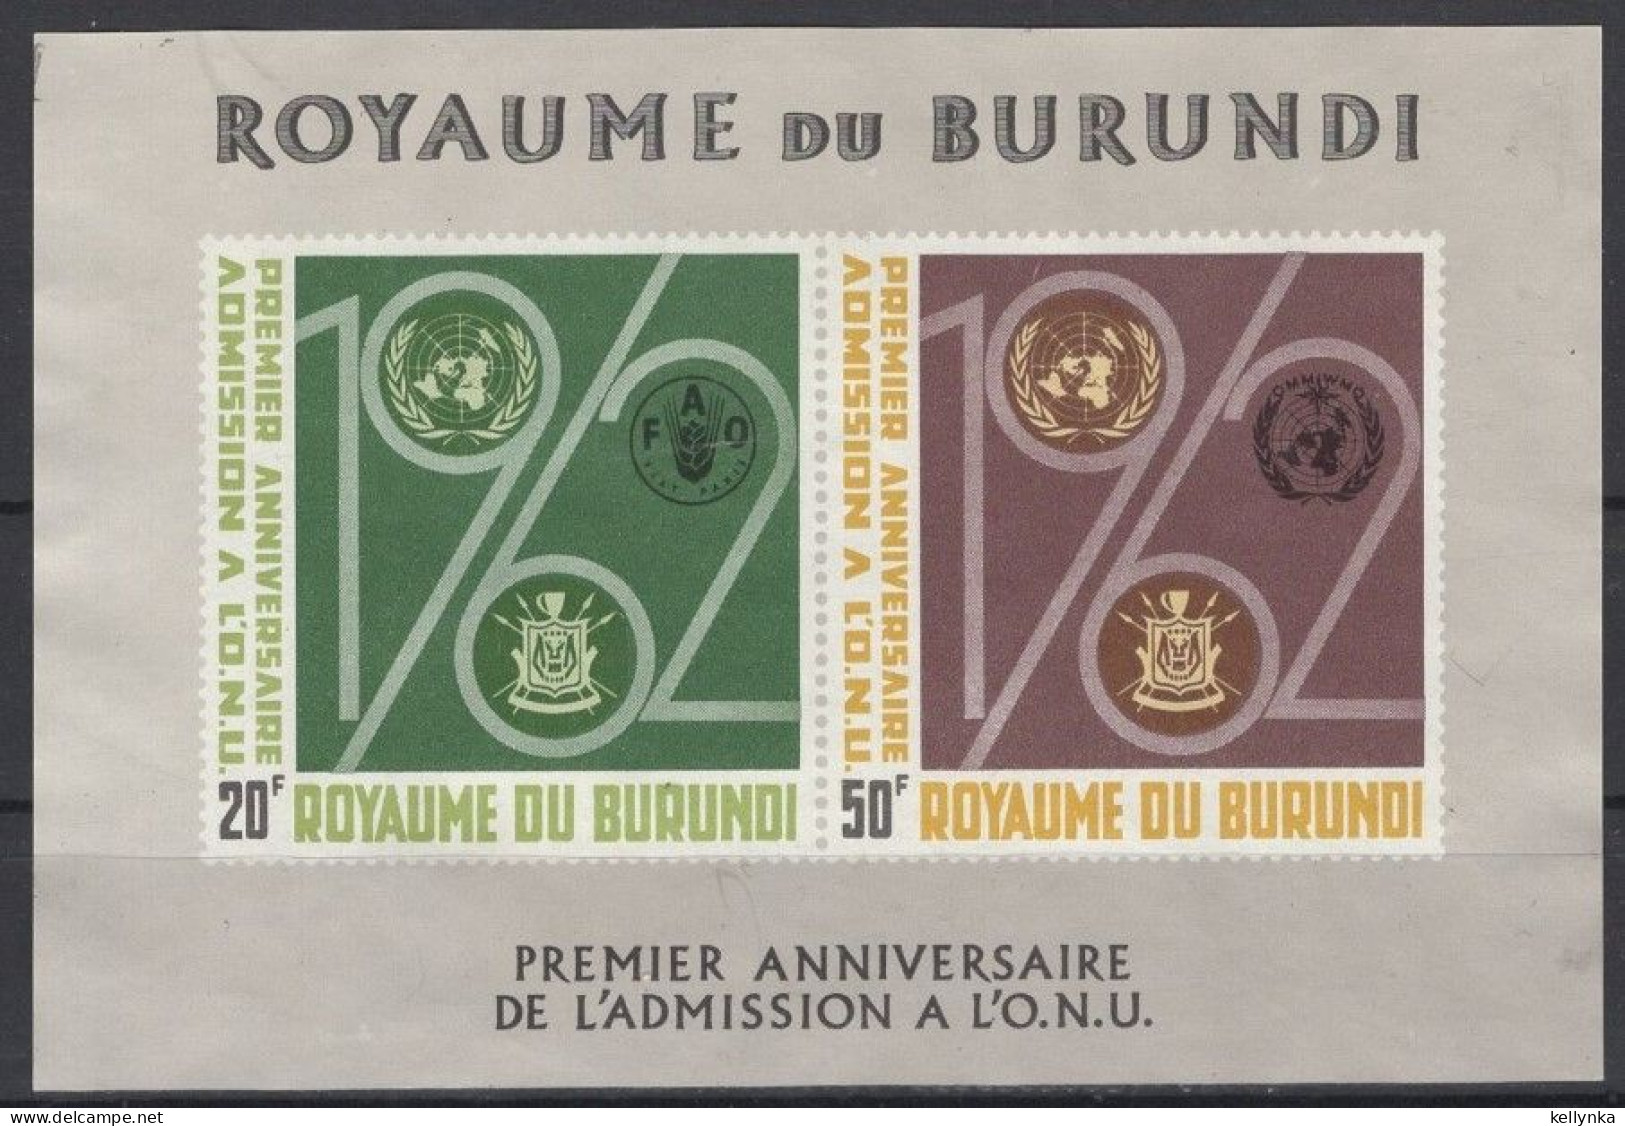 Burundi - BL2 - ONU - 1963 - MNH - Nuovi